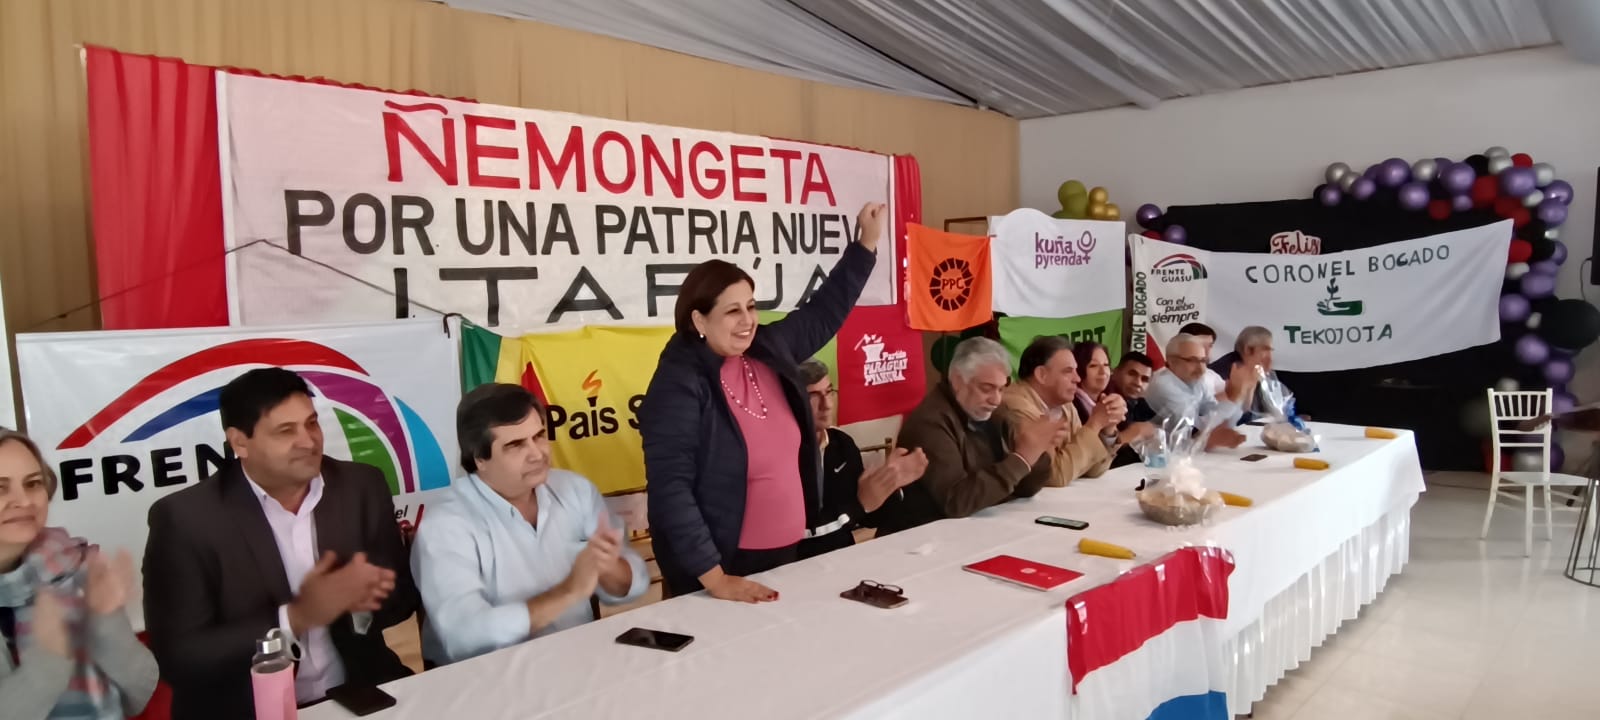 Paraguay: Esperanza Martínez inició la carrera presidencial